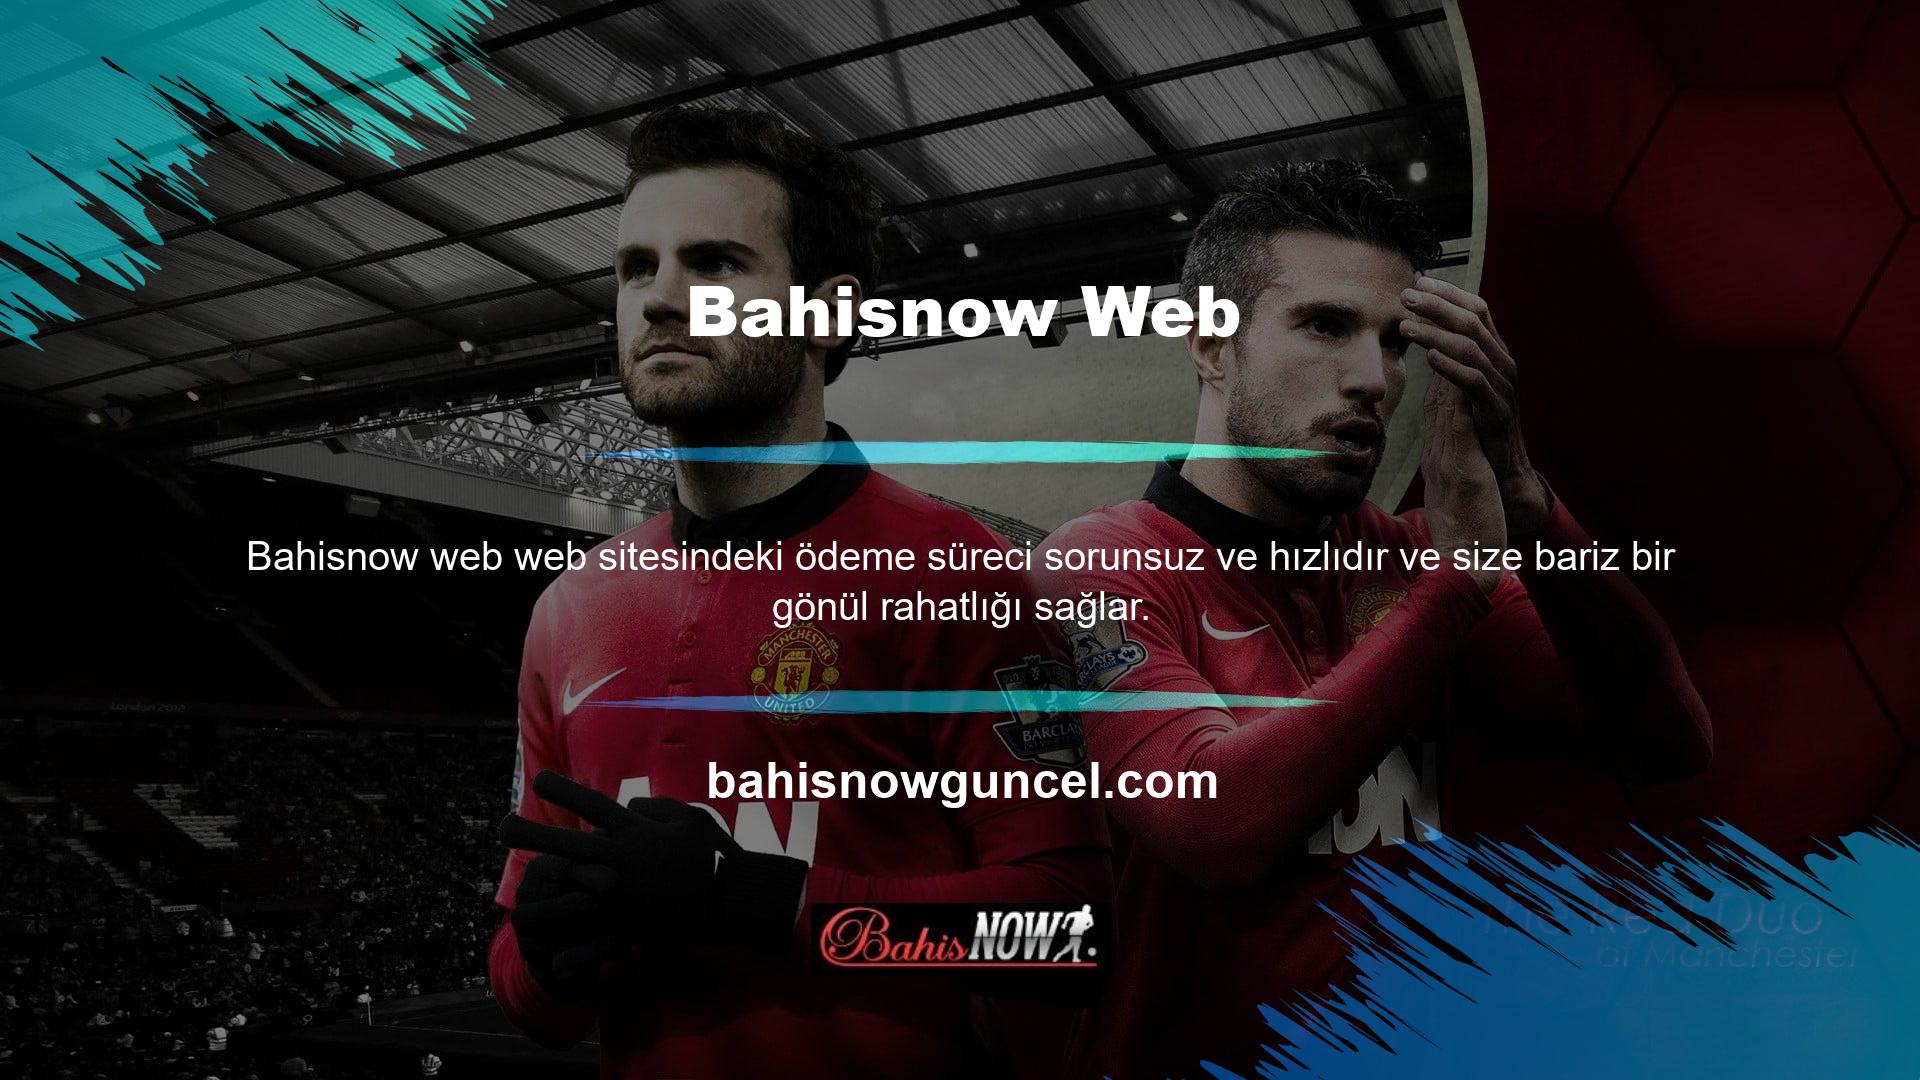 Bahisnow oyun sitelerine ilişkin ayrıntılı bilgiler ve tüm politika ve yönergeler, web sitesinde açık ve şeffaf bir şekilde gösterilmektedir